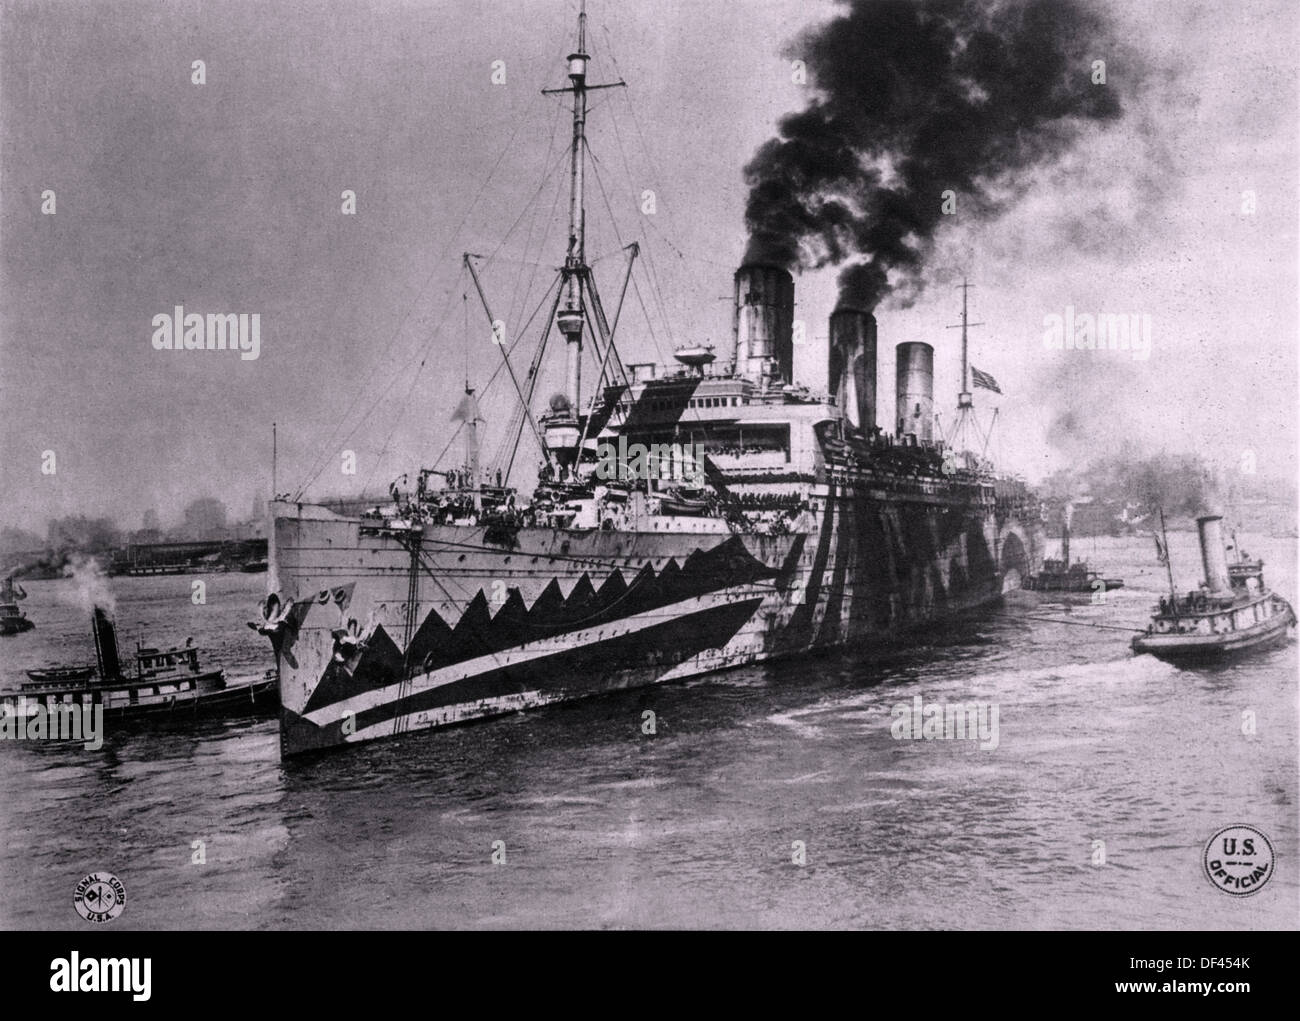 USS Leviathan, anciennement le paquebot allemand Vaterland, en temps de guerre de la peinture de camouflage, laissant d'Hoboken, NJ, USA pour la France, 1918 Banque D'Images